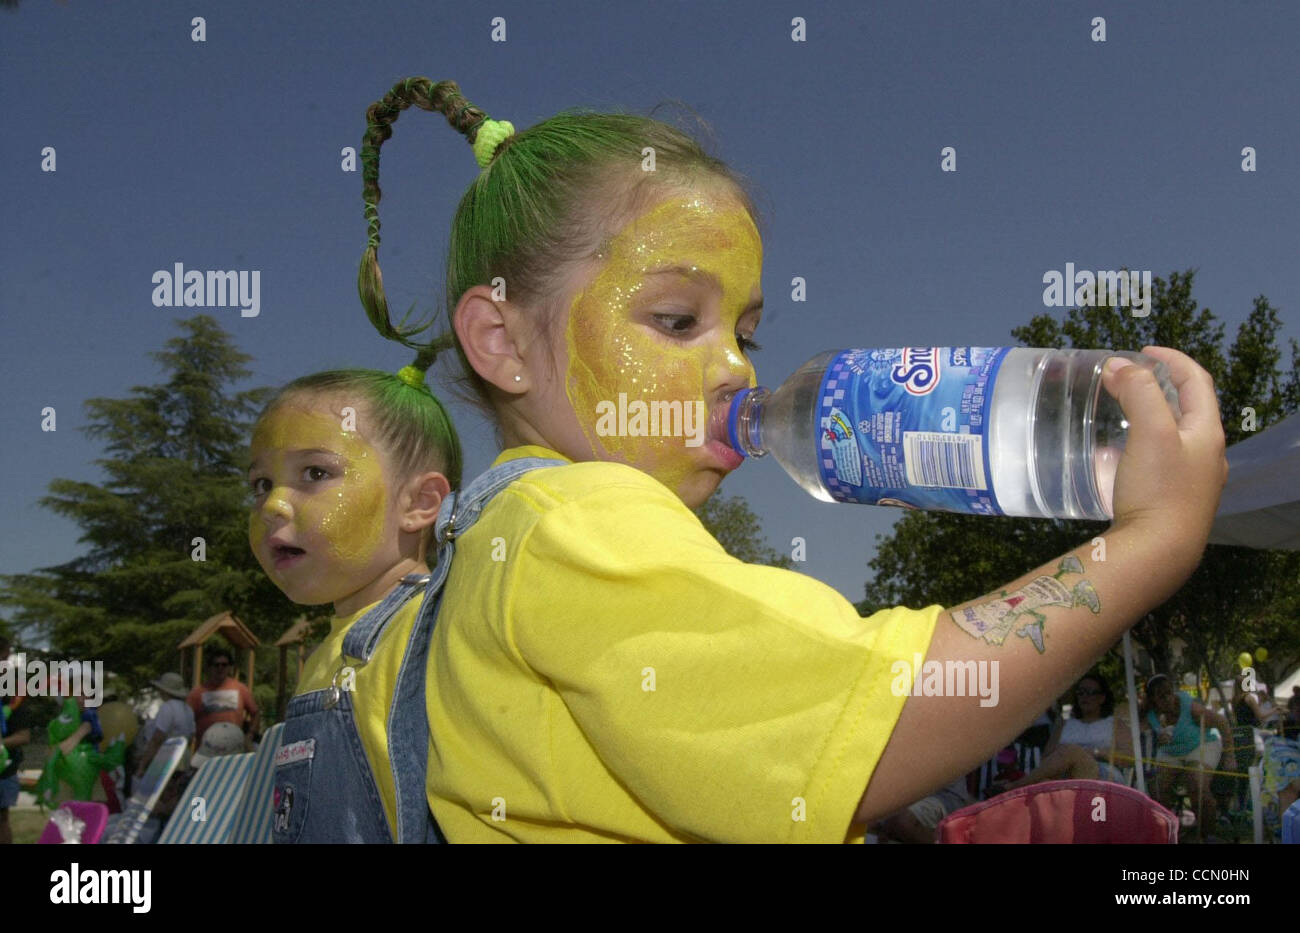 (L-R) vestida como mazorcas de maíz gemelos Christina y Alexis Yount (CQ), 4 de Brentwood, golpearon el Brentwood calor con agua helada mientras espera por su hermano para entrar en un concurso de comer maíz en la 12ª edición CornFest en Brentwood, California, el sábado, 10 de julio de 2004. Además del concurso el 3 d Foto de stock